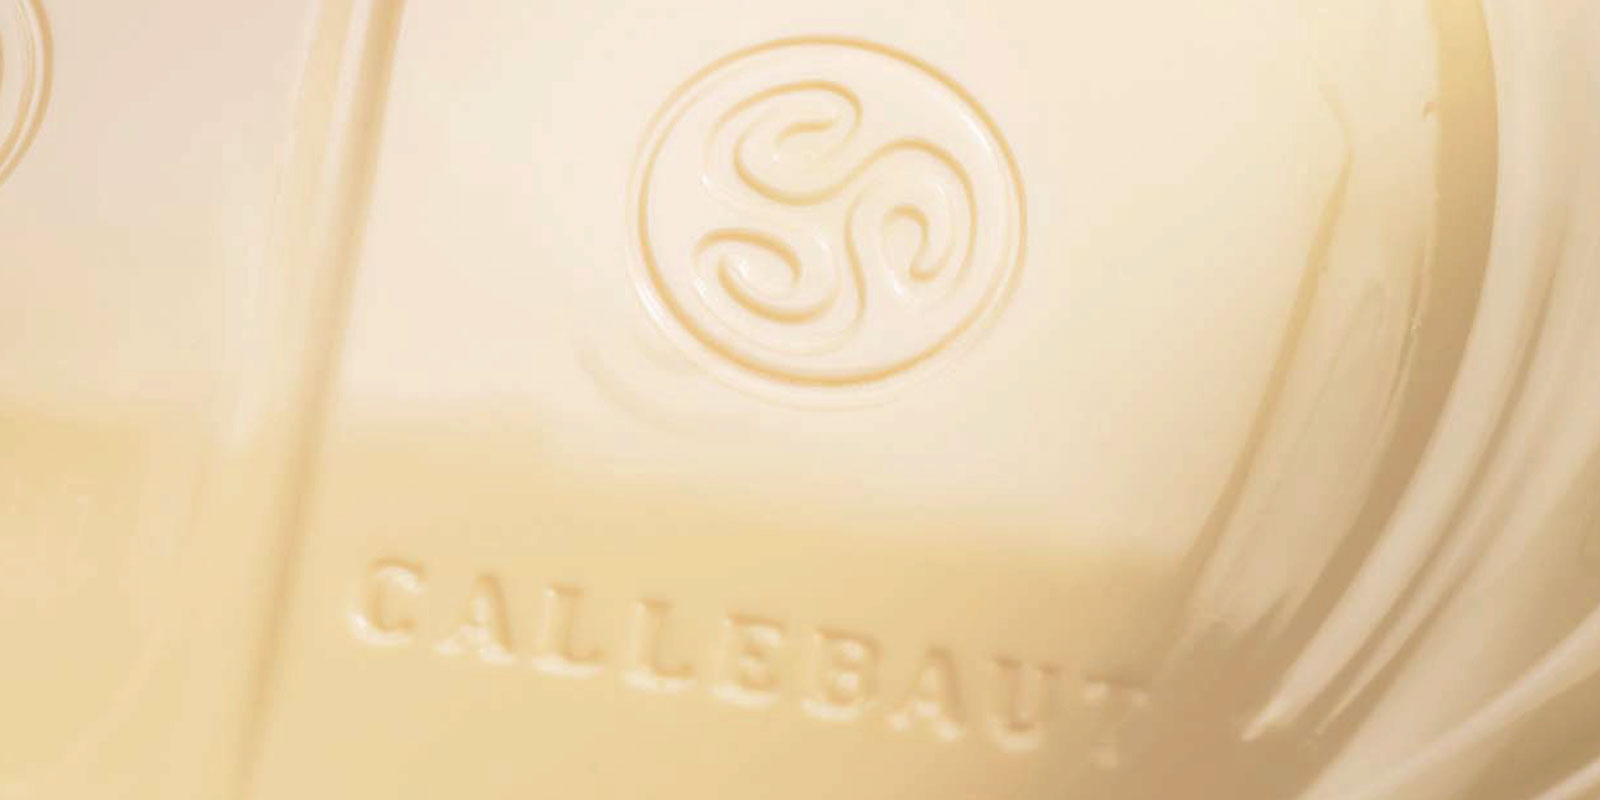 Chocolates brancos da Callebaut O chocolate branco e o resultado da mistura de manteiga de cacau, leite em po e acucar. A proporcao de mistura destes ingredientes - por exemplo vanilina, baunilha ou lecitina - determina o sabor do produto final.